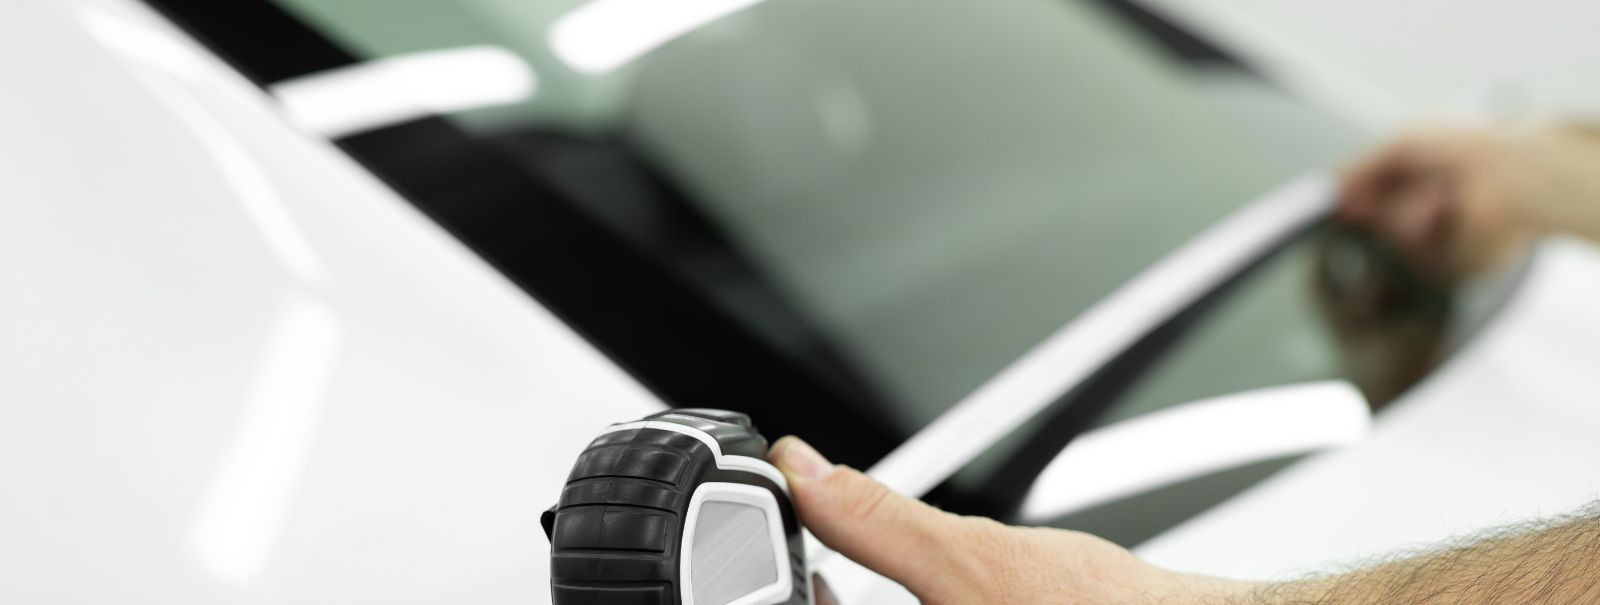 Sõiduki klaasikahjustused võivad ulatuda väikestest kiipidest ja mõradest kuni täieliku purunemiseni. Teede praht, temperatuurikõikumised ja õnnetused aitavad k